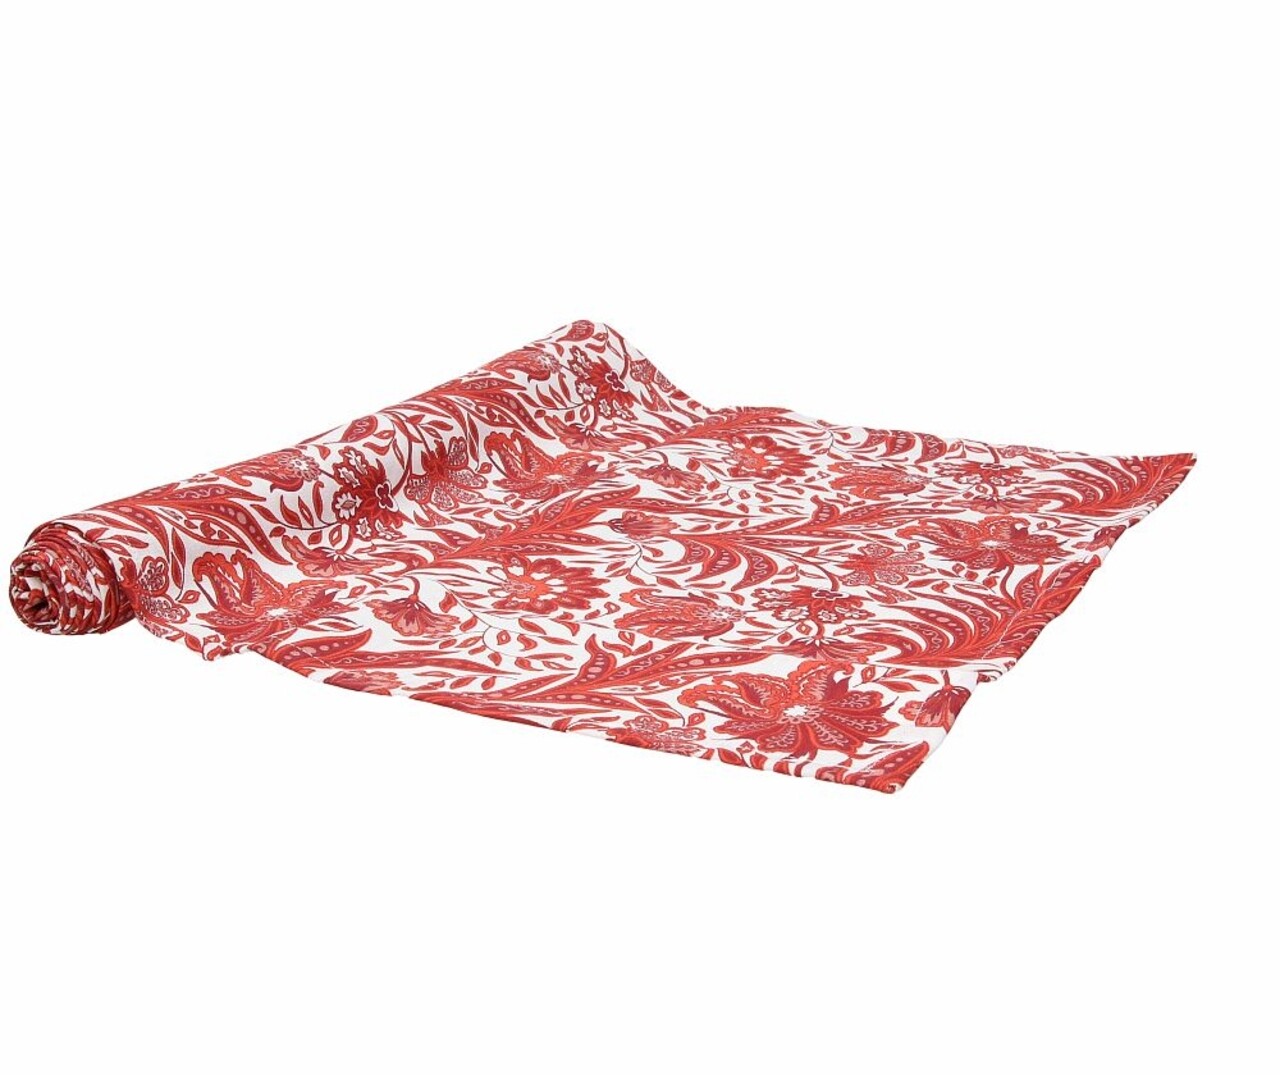 Runner terítő, Tognana, Red Ornament, 40 x 140 cm, 90% pamut, 10% poliészter, többszínű